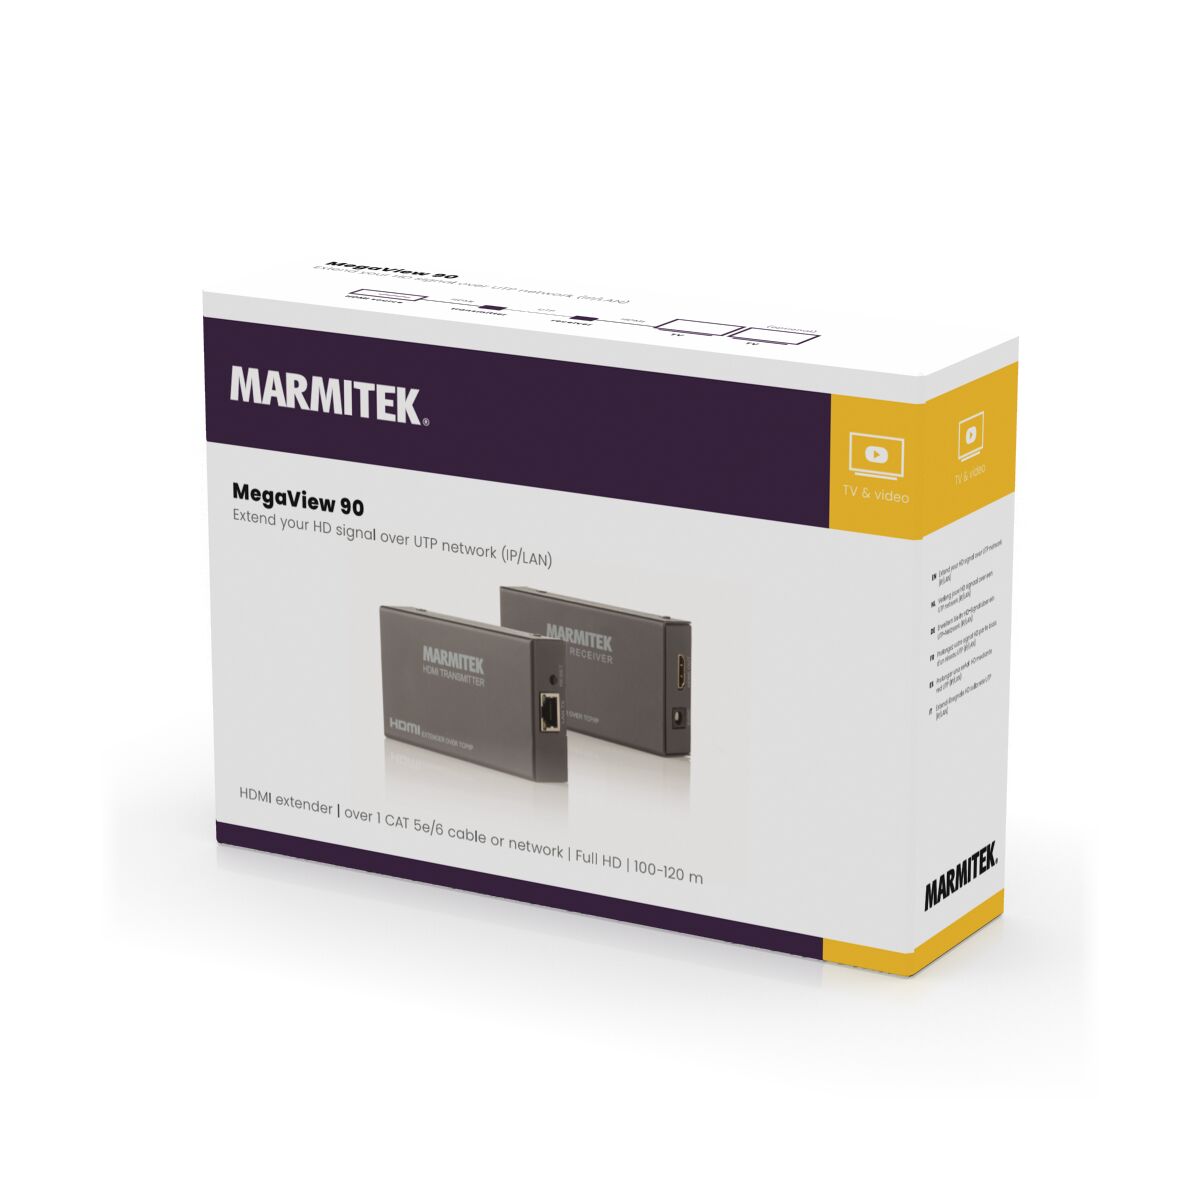 MegaView 90 - HDMI Extender Ethernet - 3D Packshot Image | Marmitek